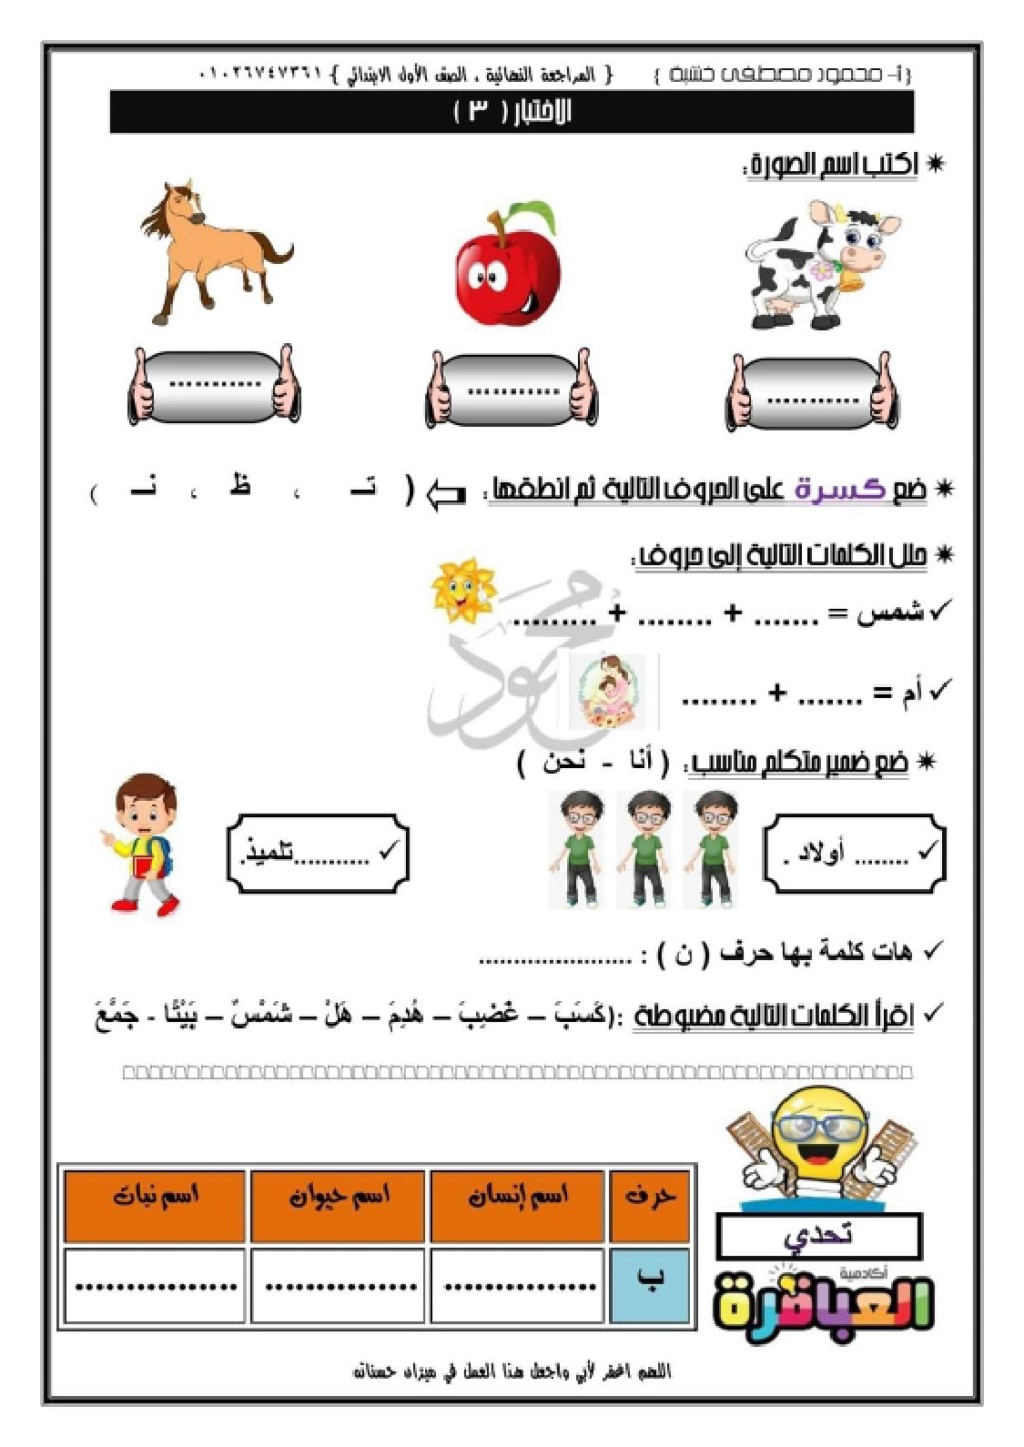 مراجعات لغة عربية للصف الاول الابتدائي في اللغة العربية 2021 Aayo_a14